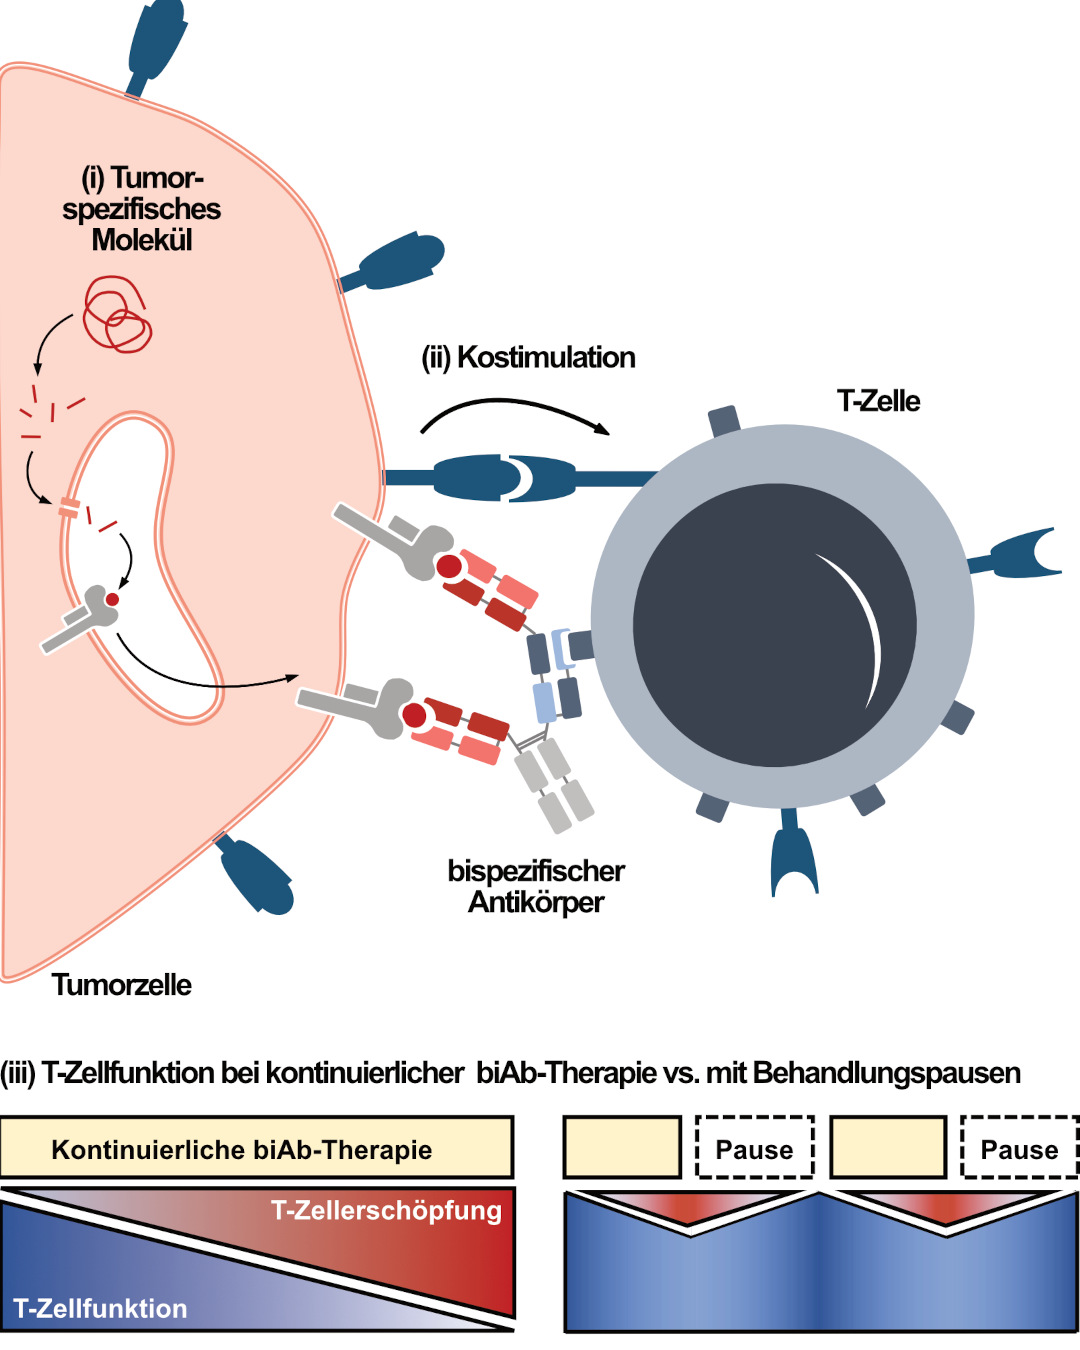 Schematische Darstellung der drei grundlegenden Ansätze. (i) Präsentation von Tumor-spezifischen Molekülen aus dem Zellinneren präsentiert auf der Zelloberfläche als Ziel von biAb. (ii) Die Rolle der Kostimulation der T-Zelle durch die Tumorzelle für die Wirksamkeit von biAb-Therapien. (iii) Behandlungspausen bei biAb-Therapien können die T-Zellfunktion über einen längeren Zeitraum aufrechterhalten und T-Zellerschöpfung reduzieren im Vergleich zu einer kontinuierlichen Gabe von biAb.